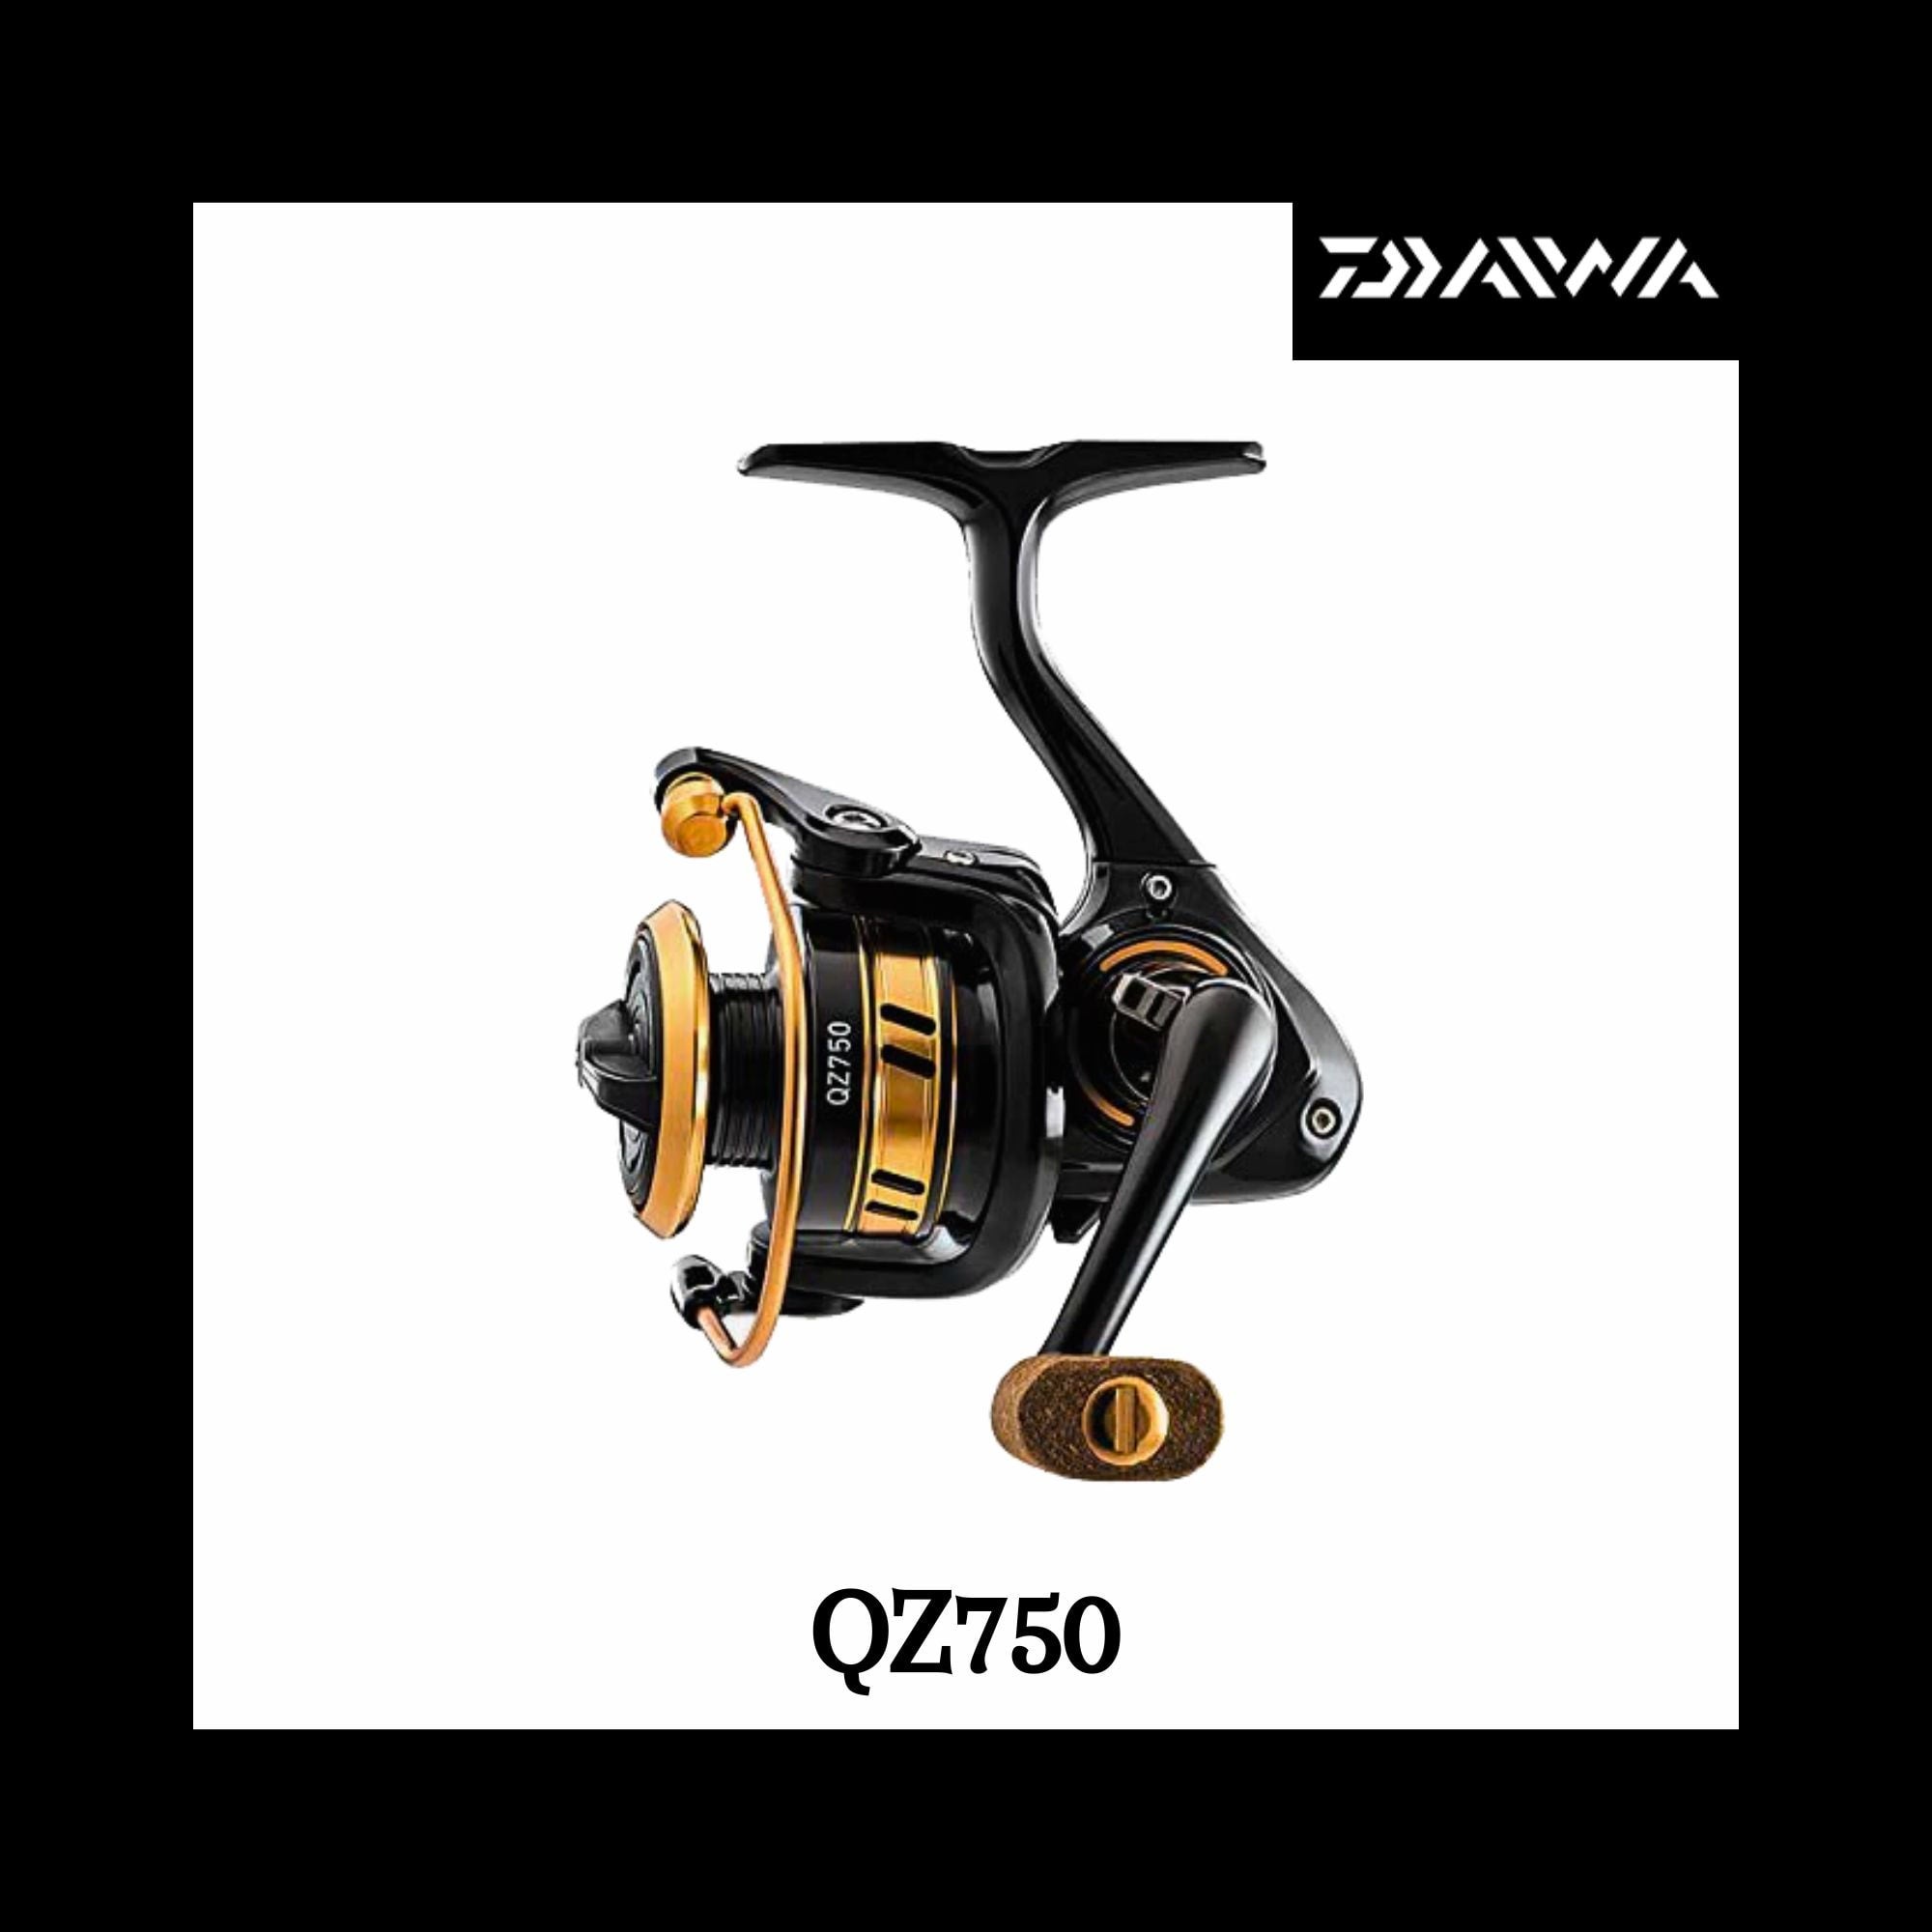 Daiwa QC750 Ultralight Reels